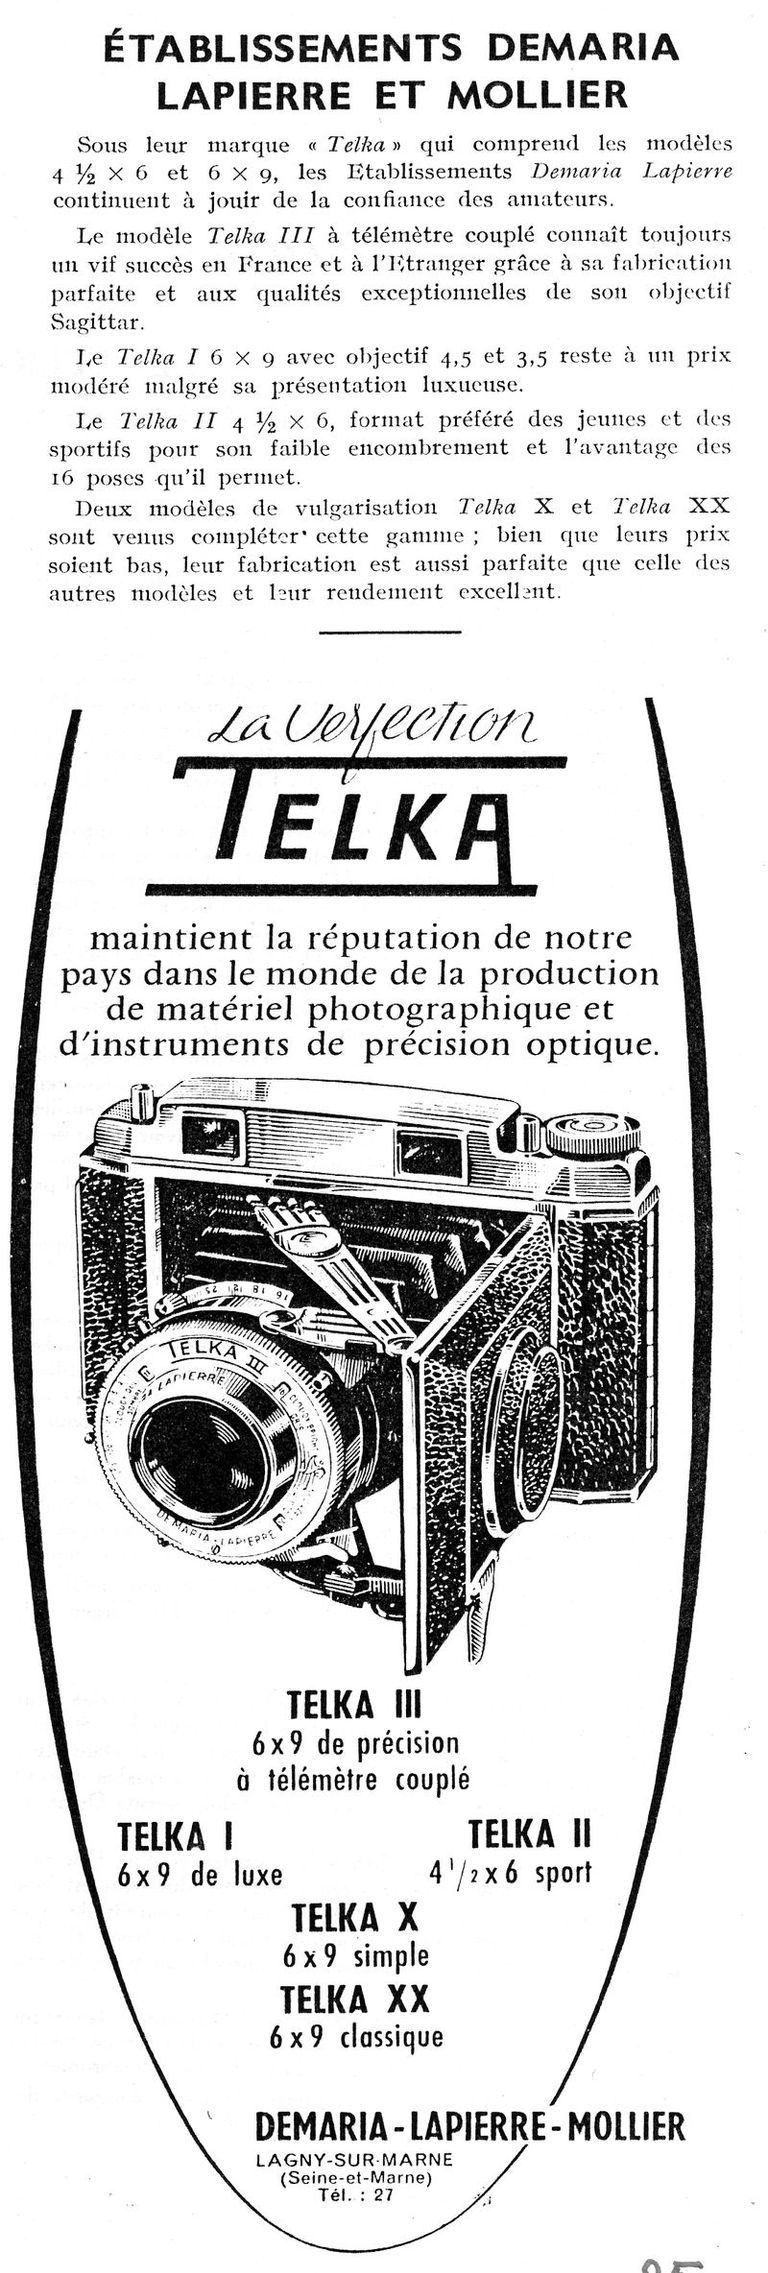 Demaria-Lapierre-Mollier - Telka I, Telka II, Telka III, Telka X, Telka XX - janvier 1957